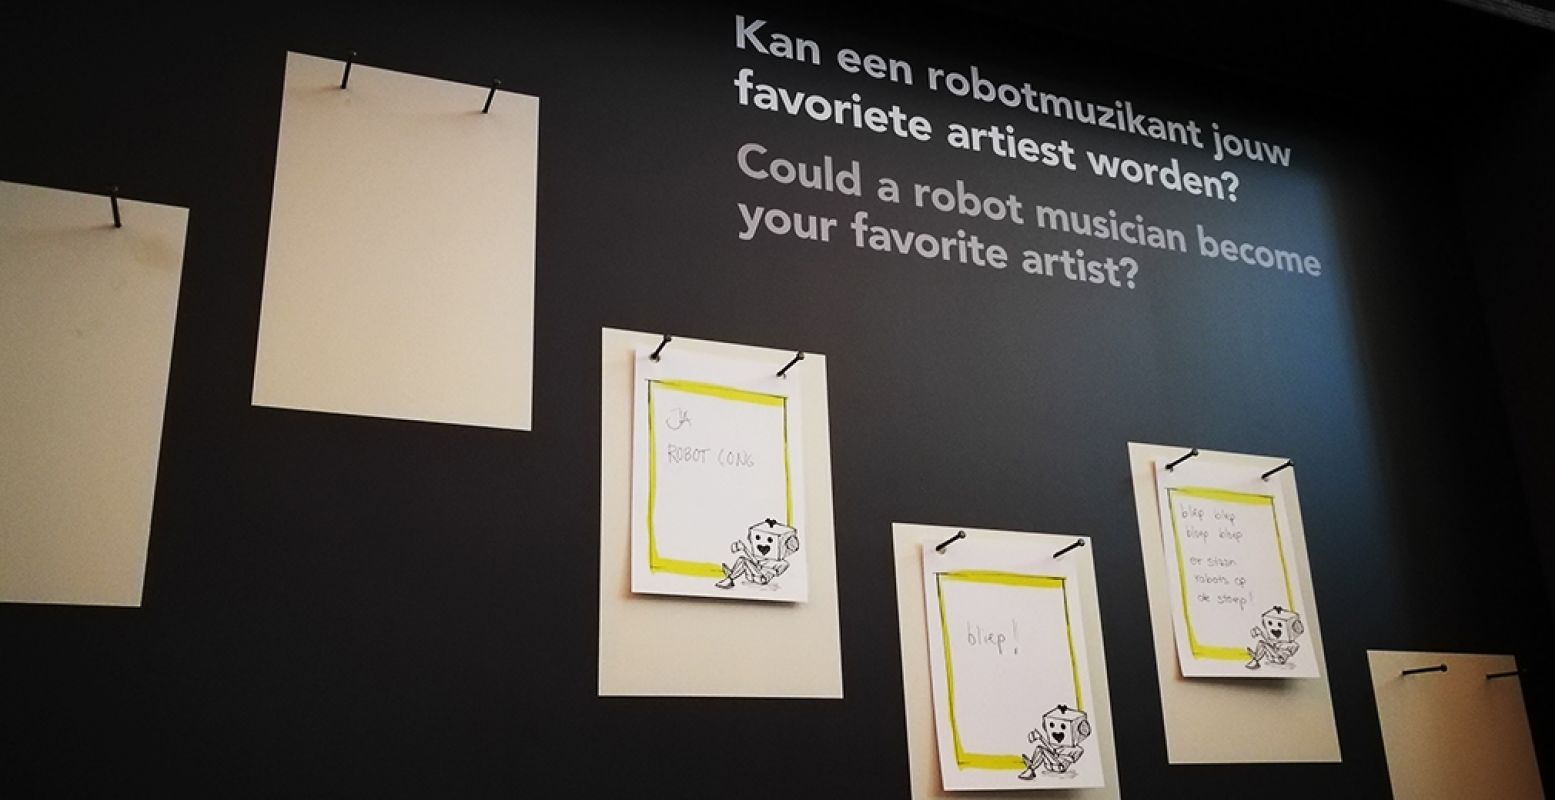 Kan een muziekrobot jou ontroeren? Deze en andere vragen komen aan bod in de expo. Laat je mening achter! Foto: DagjeWeg.NL.